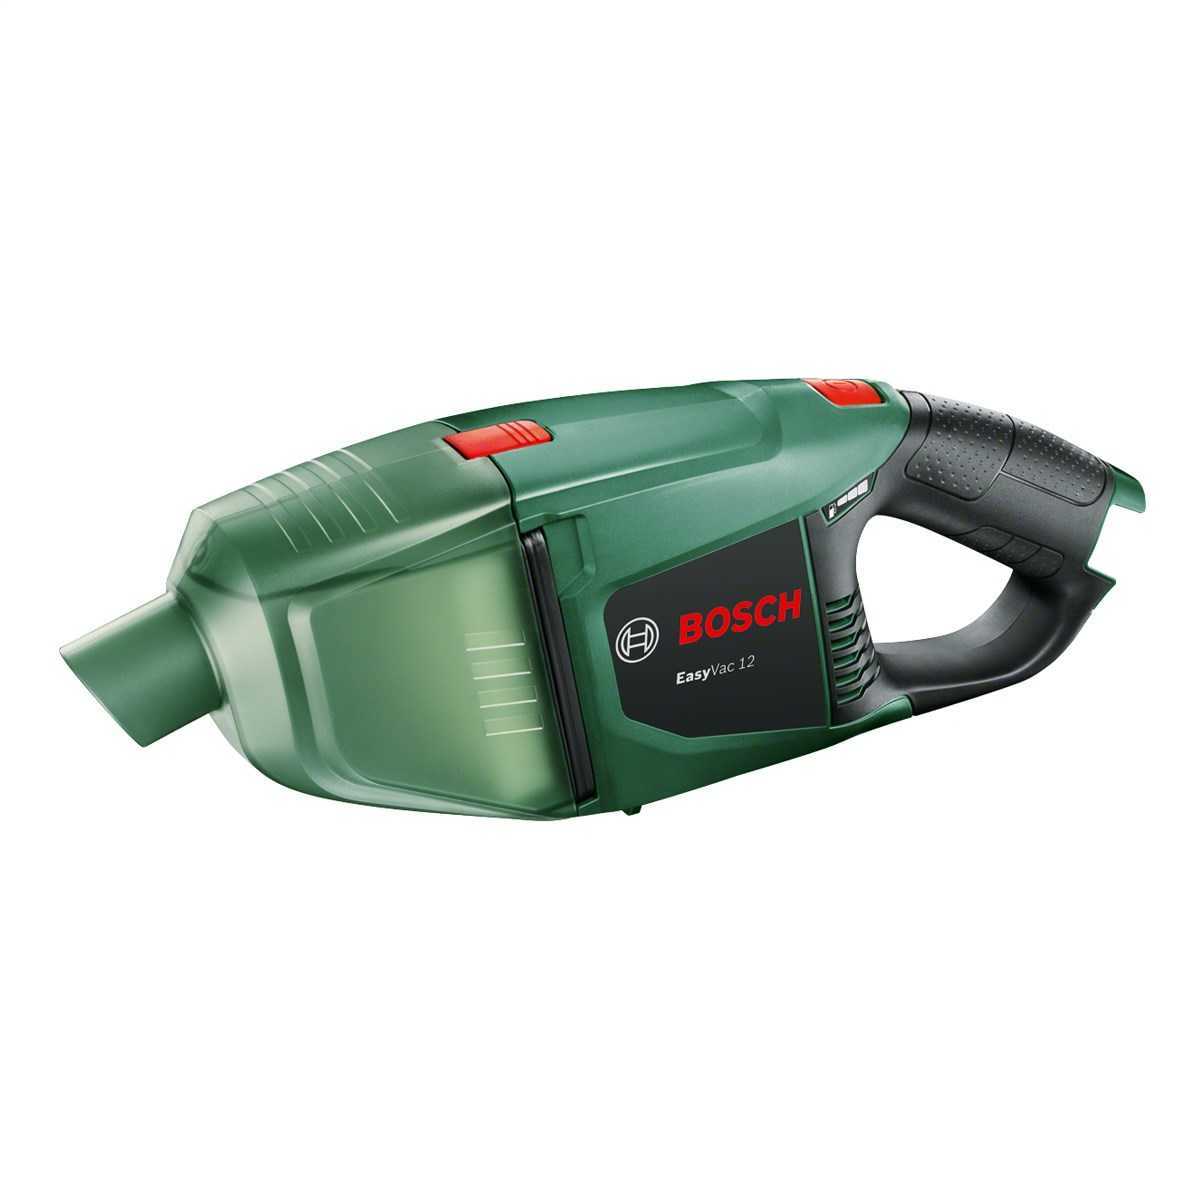 Bosch Easy Vac 12 Akülü Süpürge Solo (06033D0000)